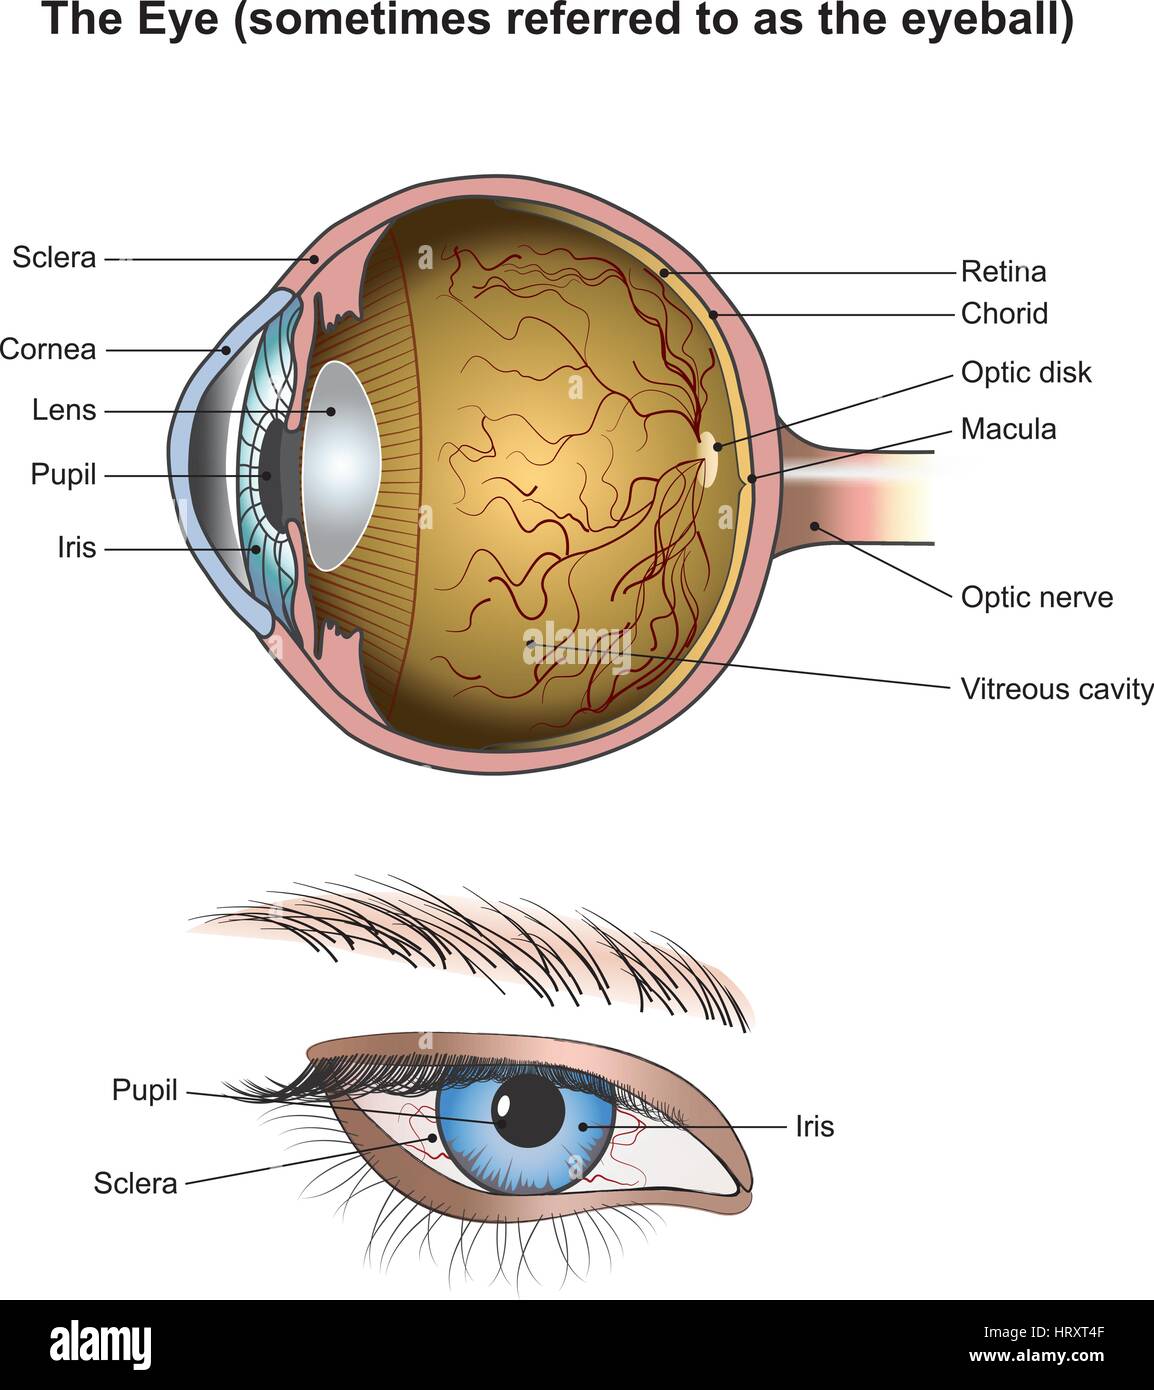 Les yeux sont les organes de la vision. Ils détectent la lumière et la transformer en impulsions électro-chimique dans les neurones. Chez les organismes supérieurs, l'œil est un complexe o Illustration de Vecteur